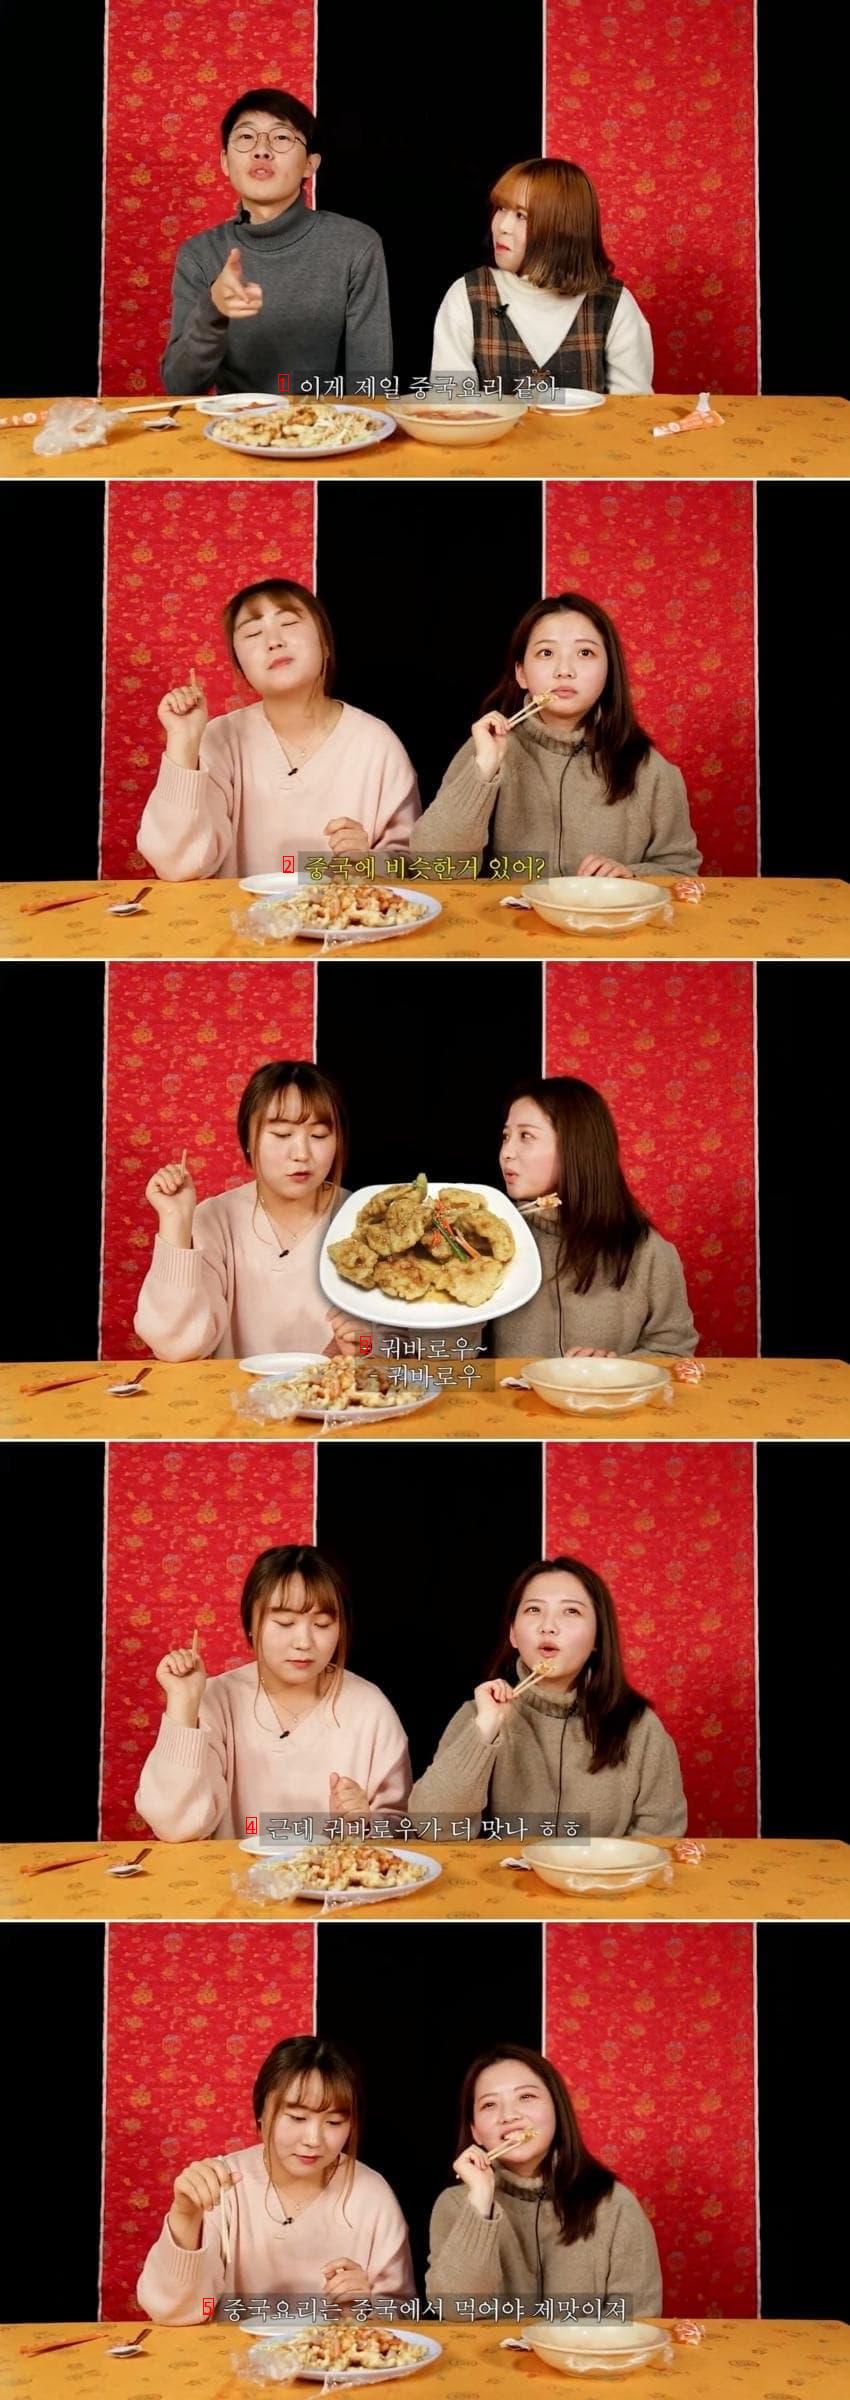 짜장면, 짬뽕, 탕수육을 먹어본 중국사람 반응.jpg